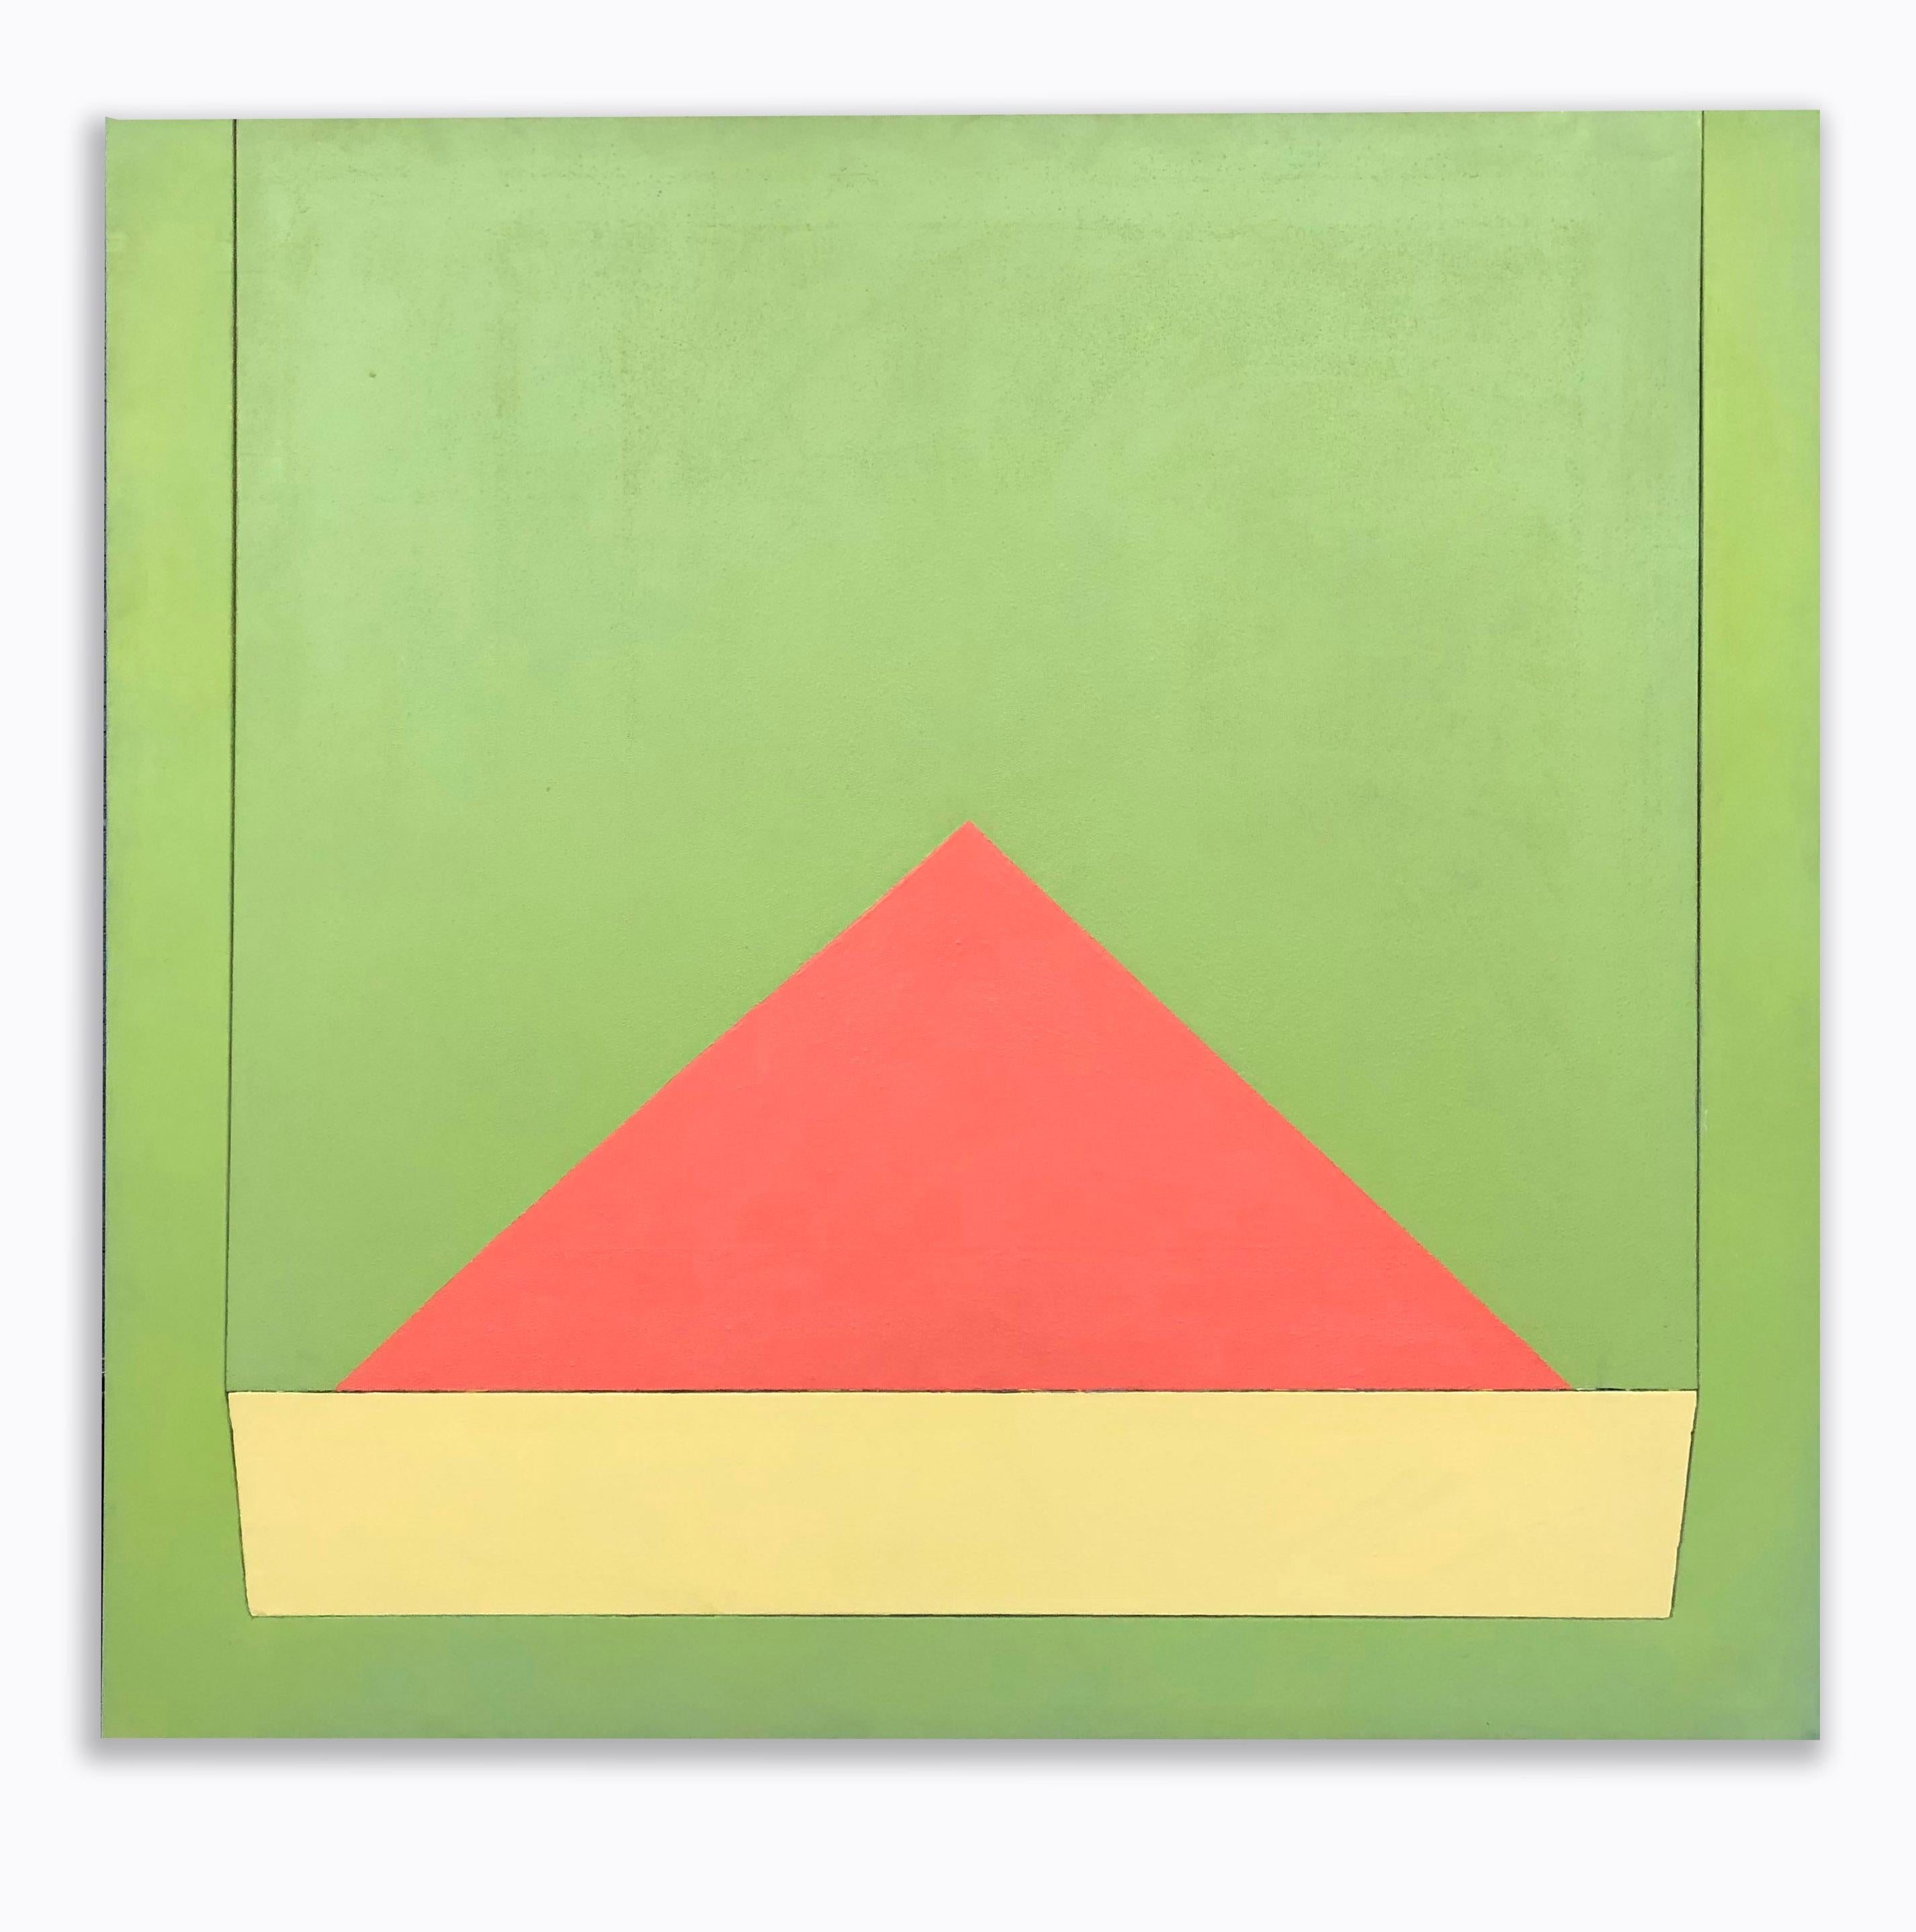 Ein modernes geometrisches abstraktes Gemälde mit dem Titel Beacon des amerikanischen Künstlers Richard Huntington aus der Mitte des Jahrhunderts.  Dieses Werk zeichnet sich durch kräftige Farben und unglaubliche Textur aus.

Richard Huntington